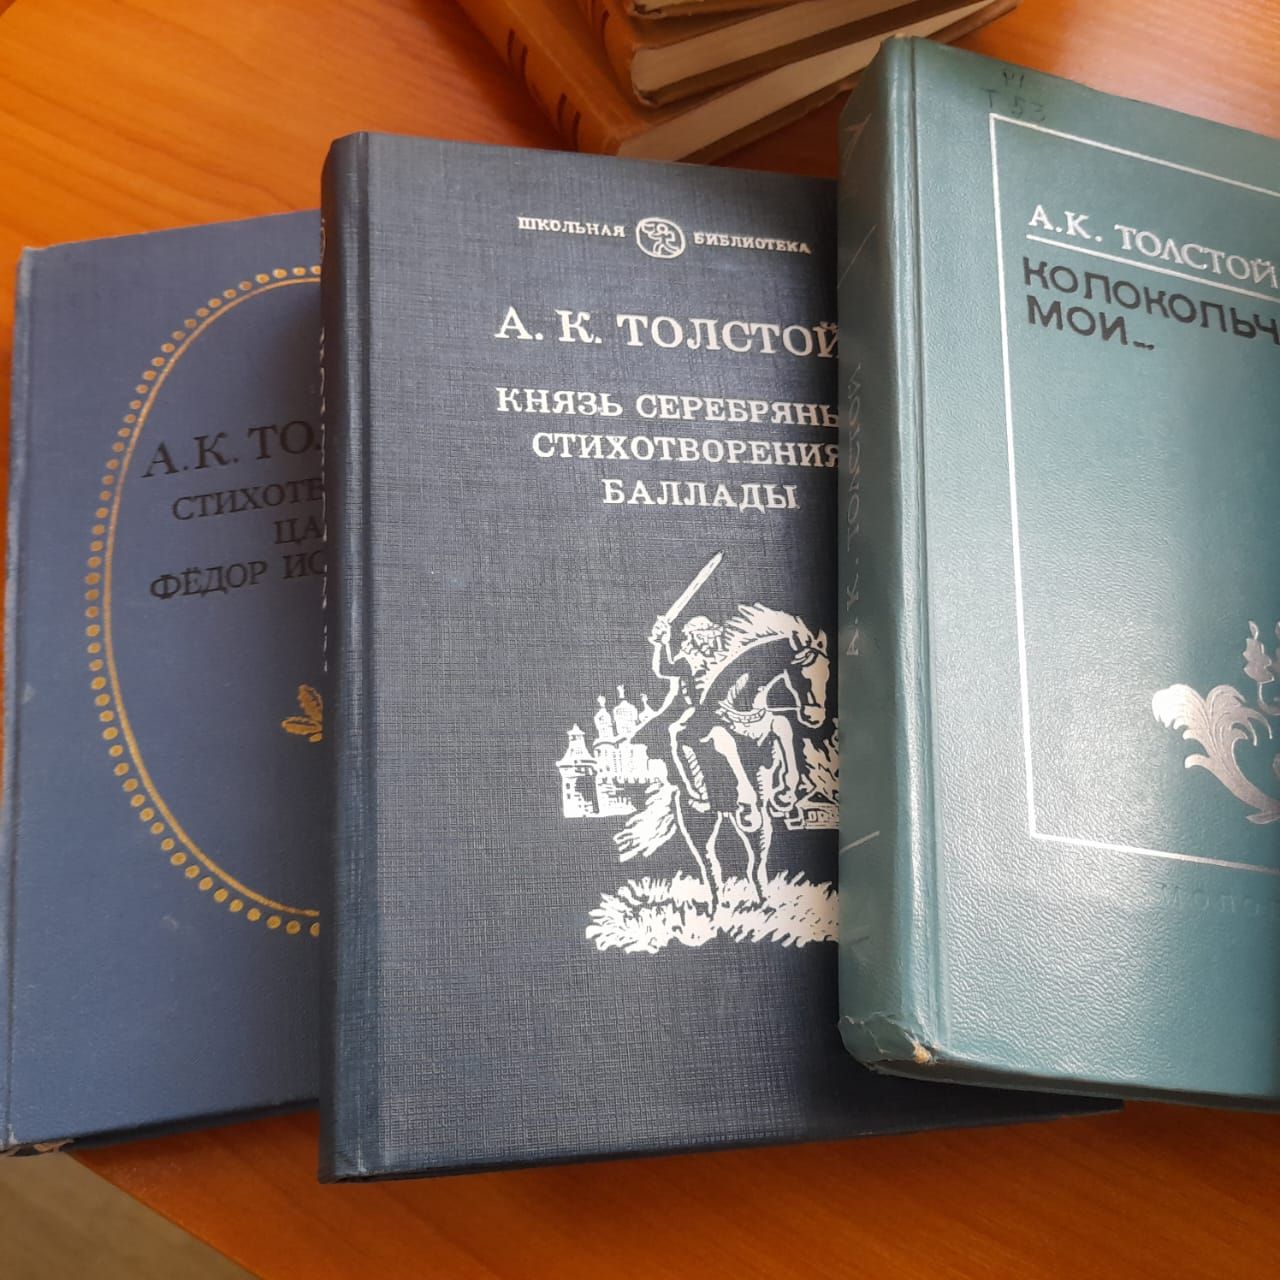 Лаишевские читатели в юбилей Алексея Толстого могут ознакомиться с его творчеством